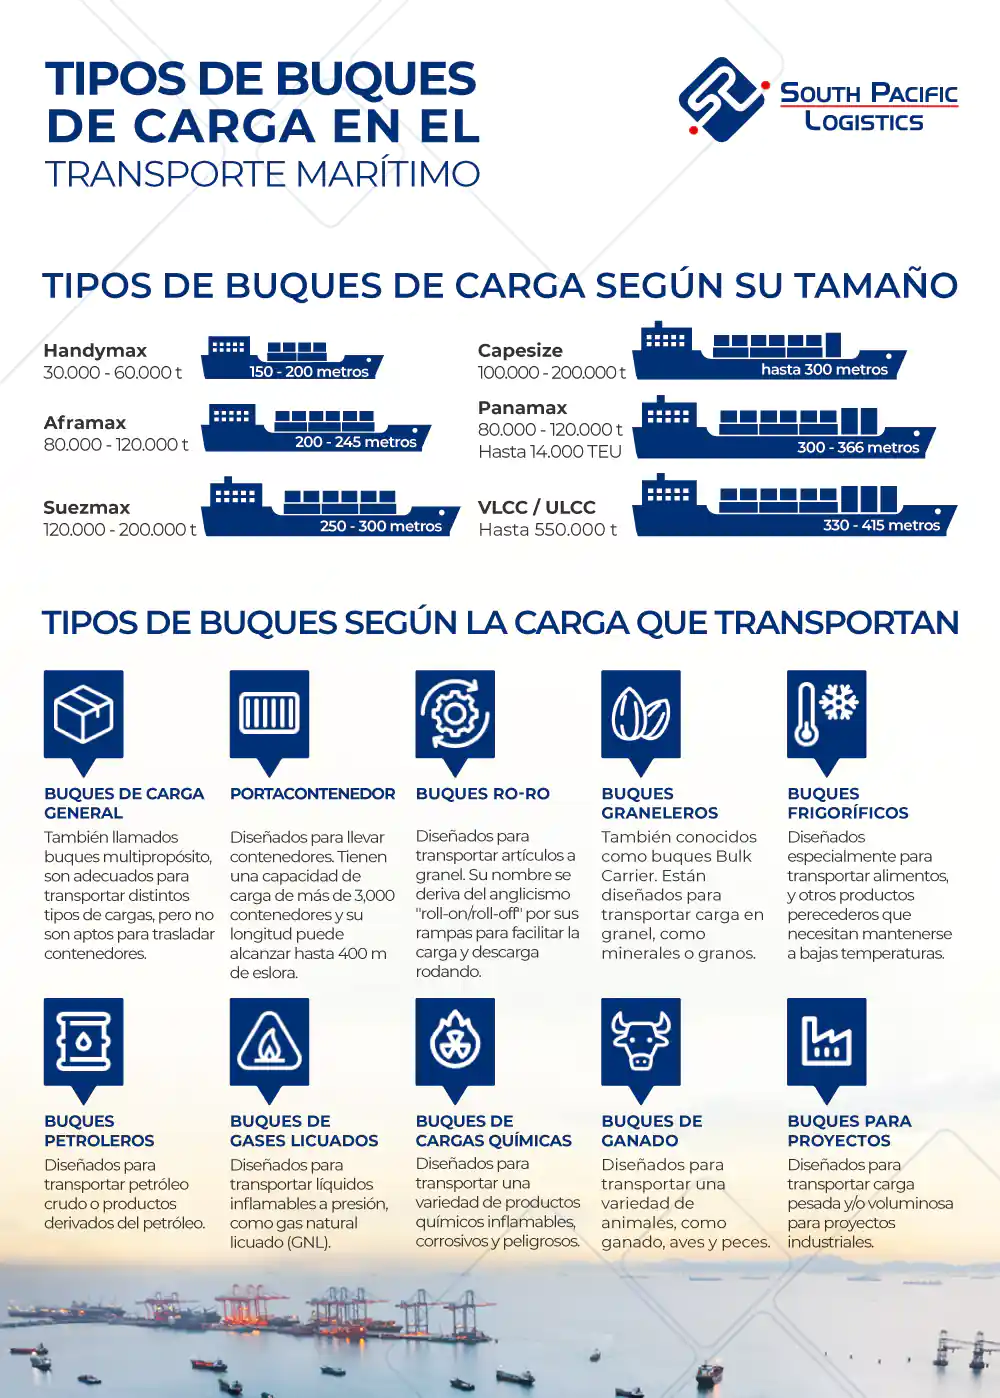  Tipos de buques de carga en el Transporte Maritimo